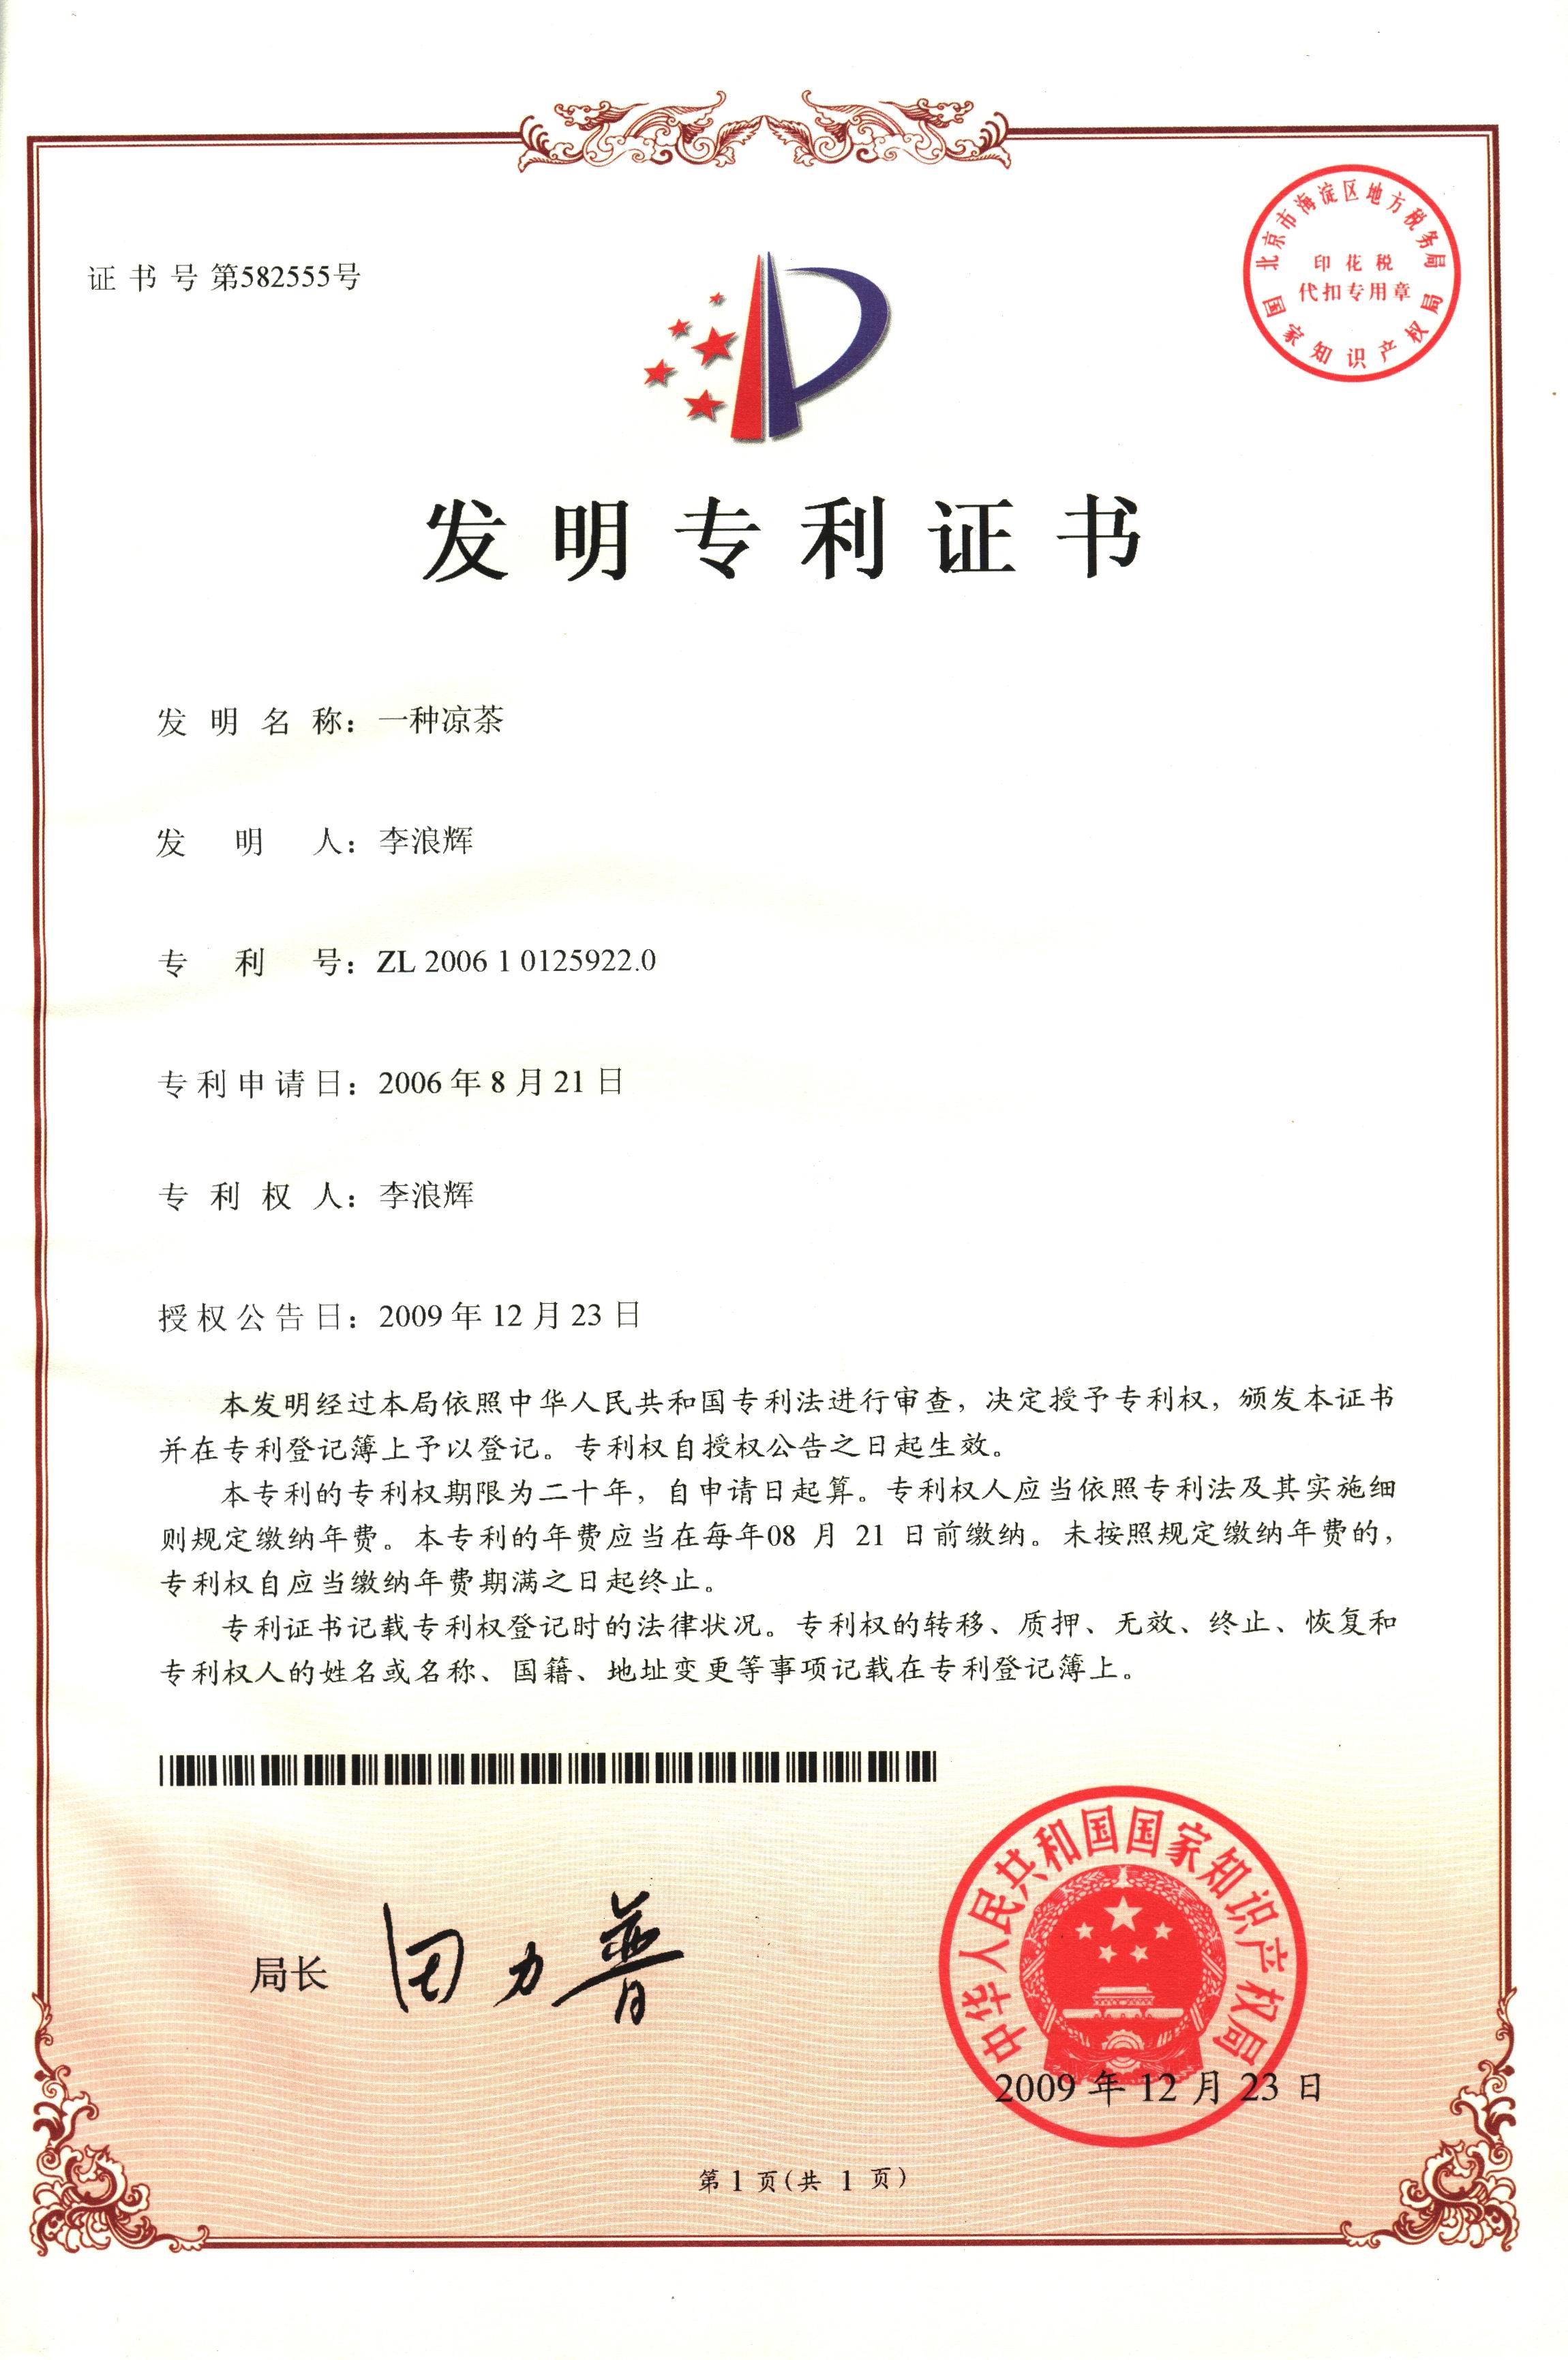 广西强寿药业一种凉茶专利